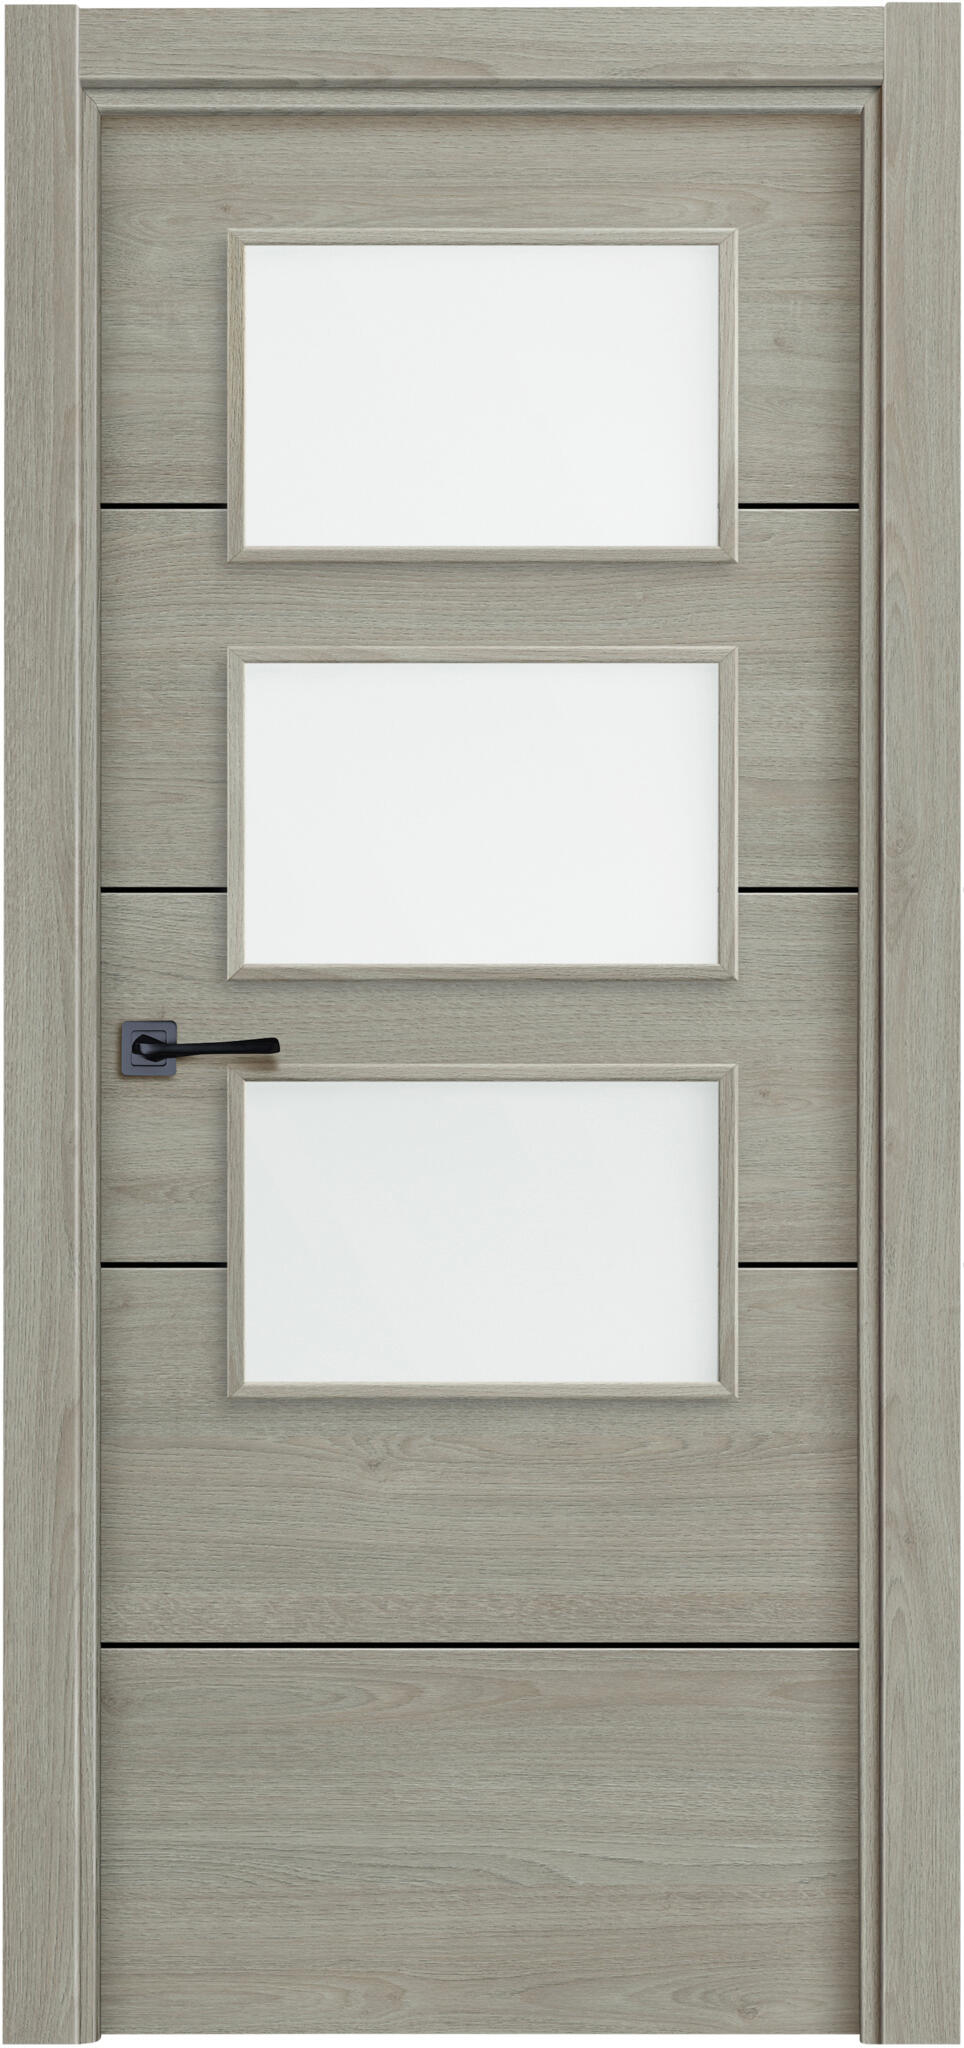 Puerta berna vila roble gris apertura derecha 60x20 con cristal 62.5cm